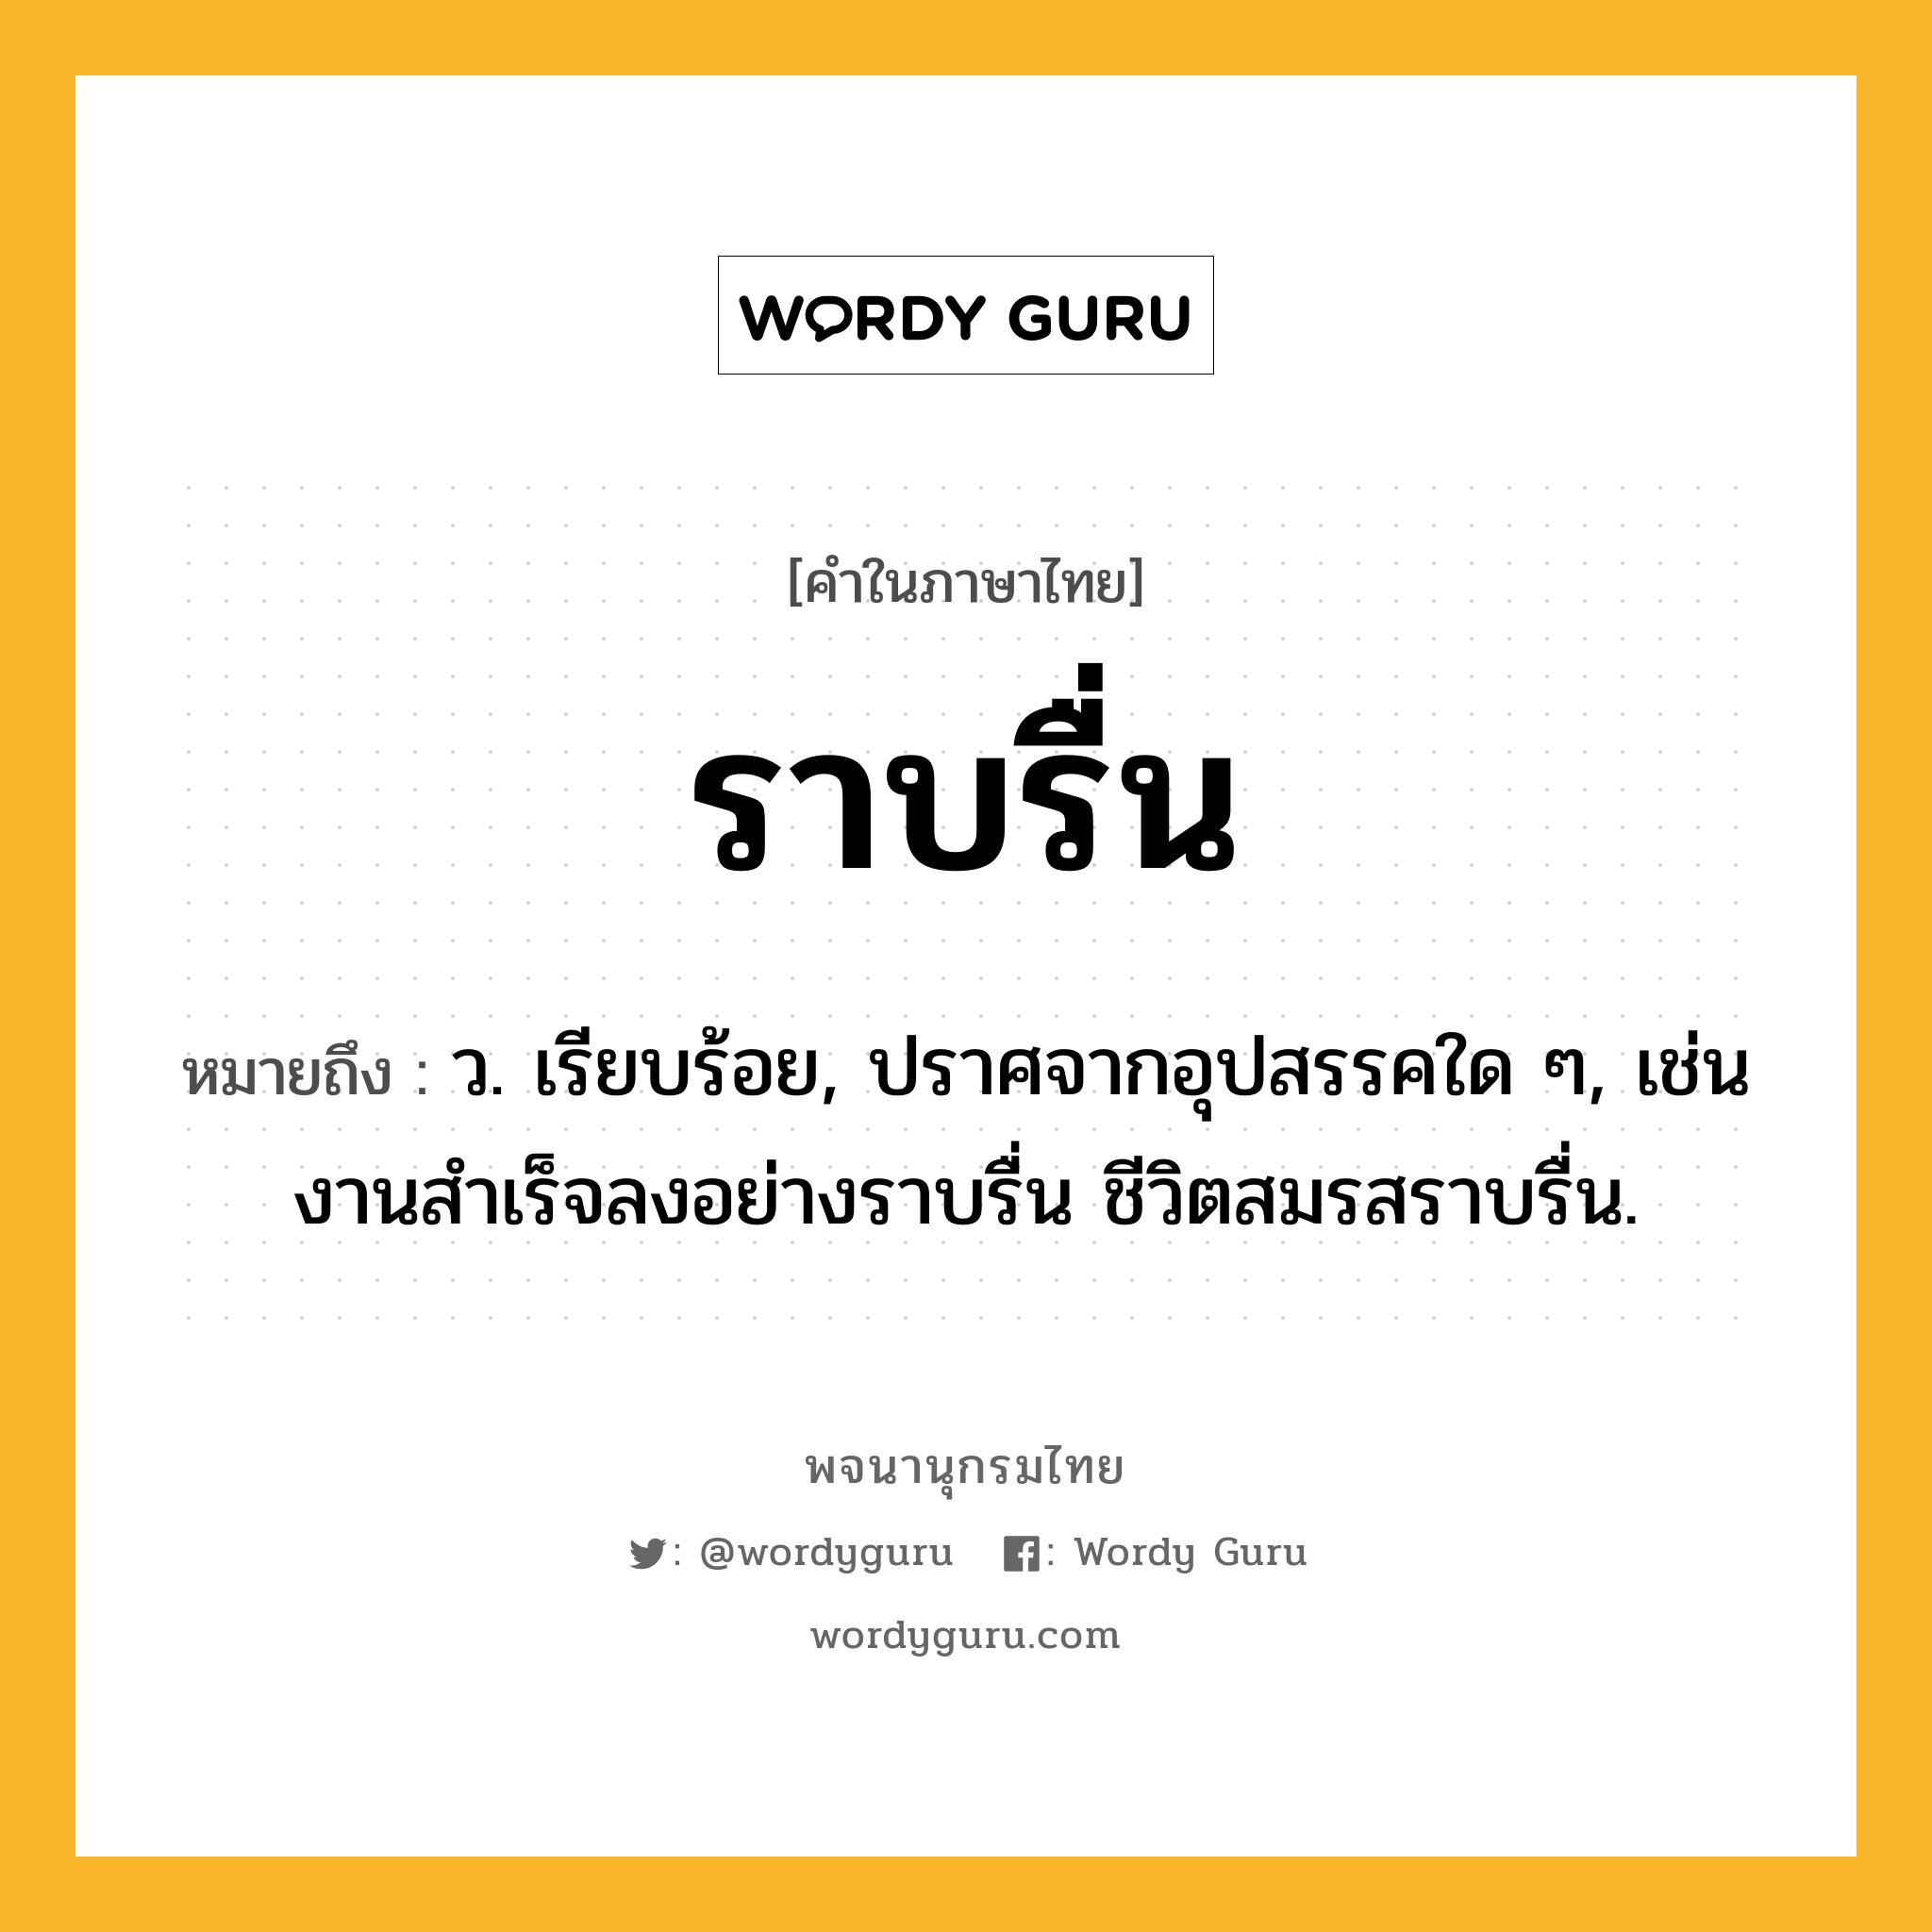 ราบรื่น ความหมาย หมายถึงอะไร?, คำในภาษาไทย ราบรื่น หมายถึง ว. เรียบร้อย, ปราศจากอุปสรรคใด ๆ, เช่น งานสําเร็จลงอย่างราบรื่น ชีวิตสมรสราบรื่น.